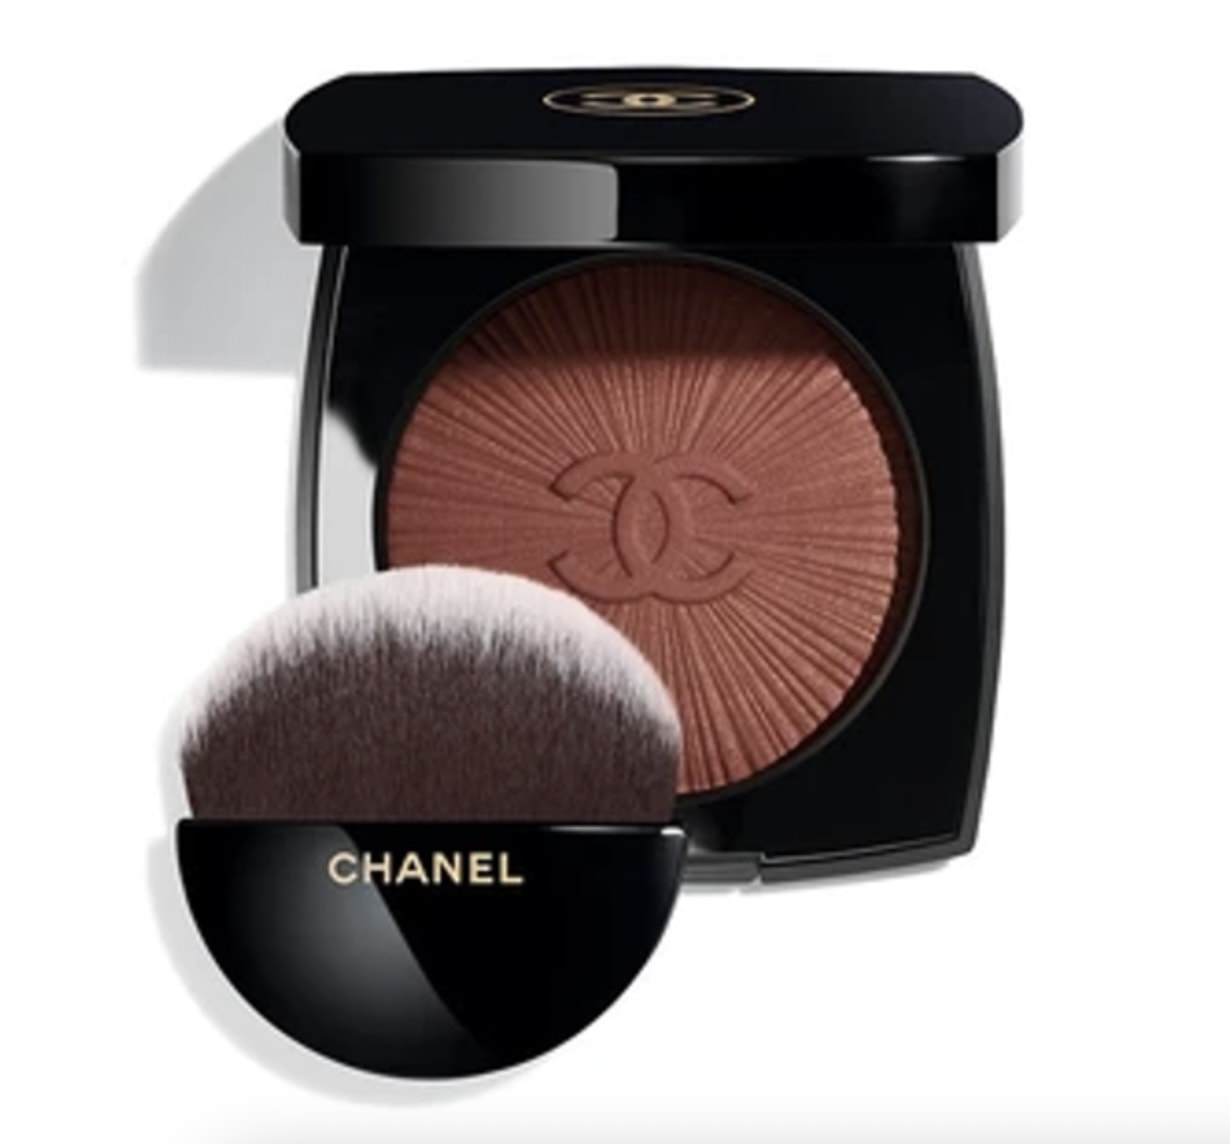 Chanel collection printemps 2022 blush